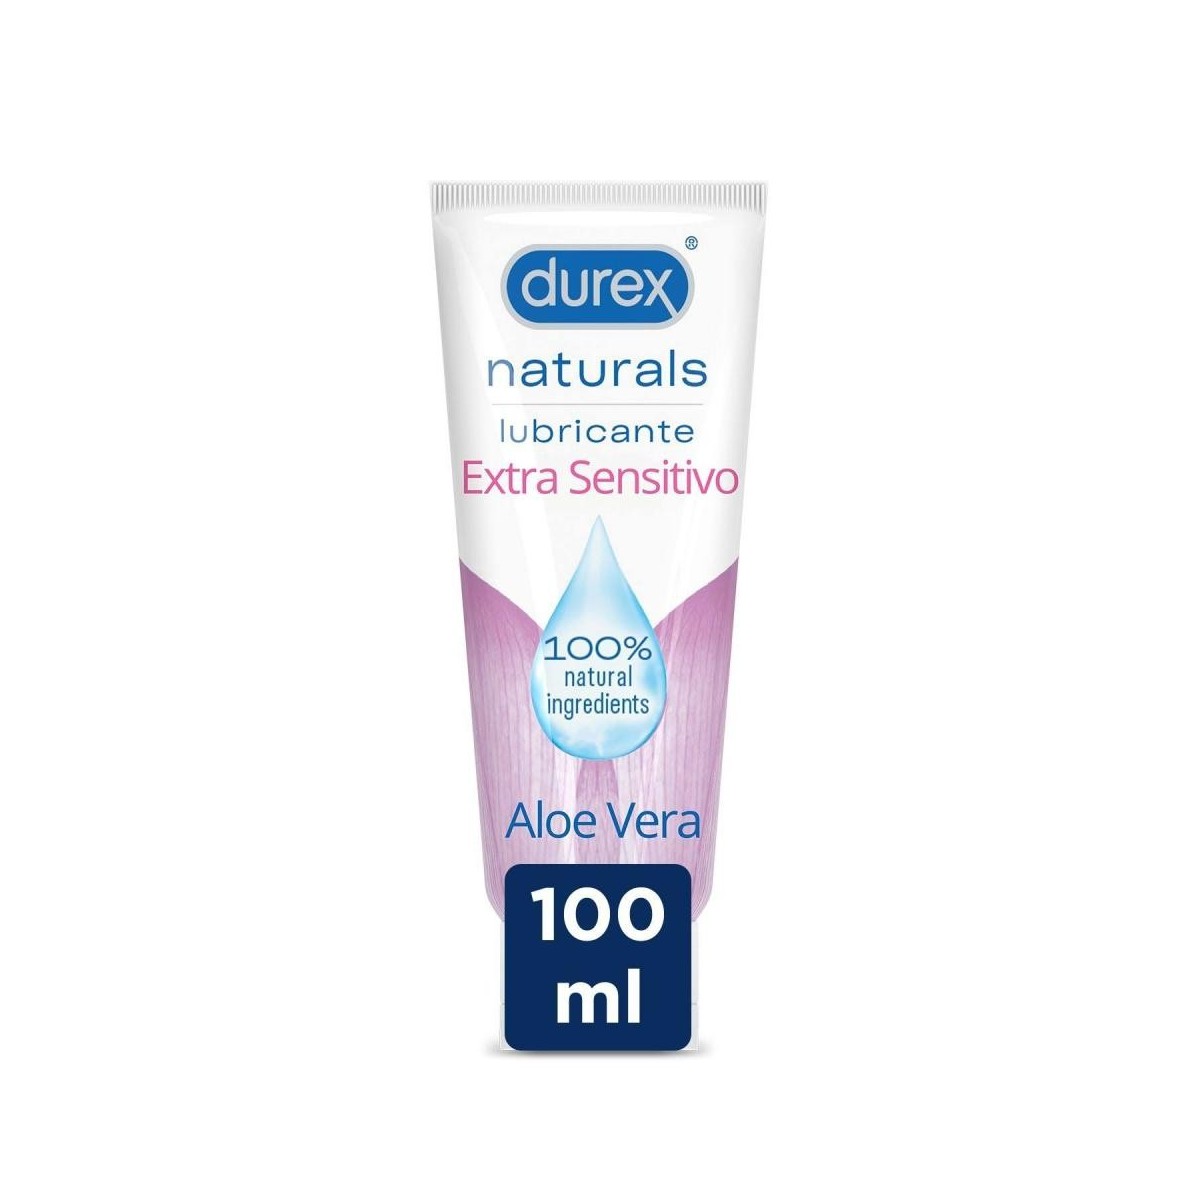 durex-lubricante-naturals-extra-sensitivo-100-mililitros